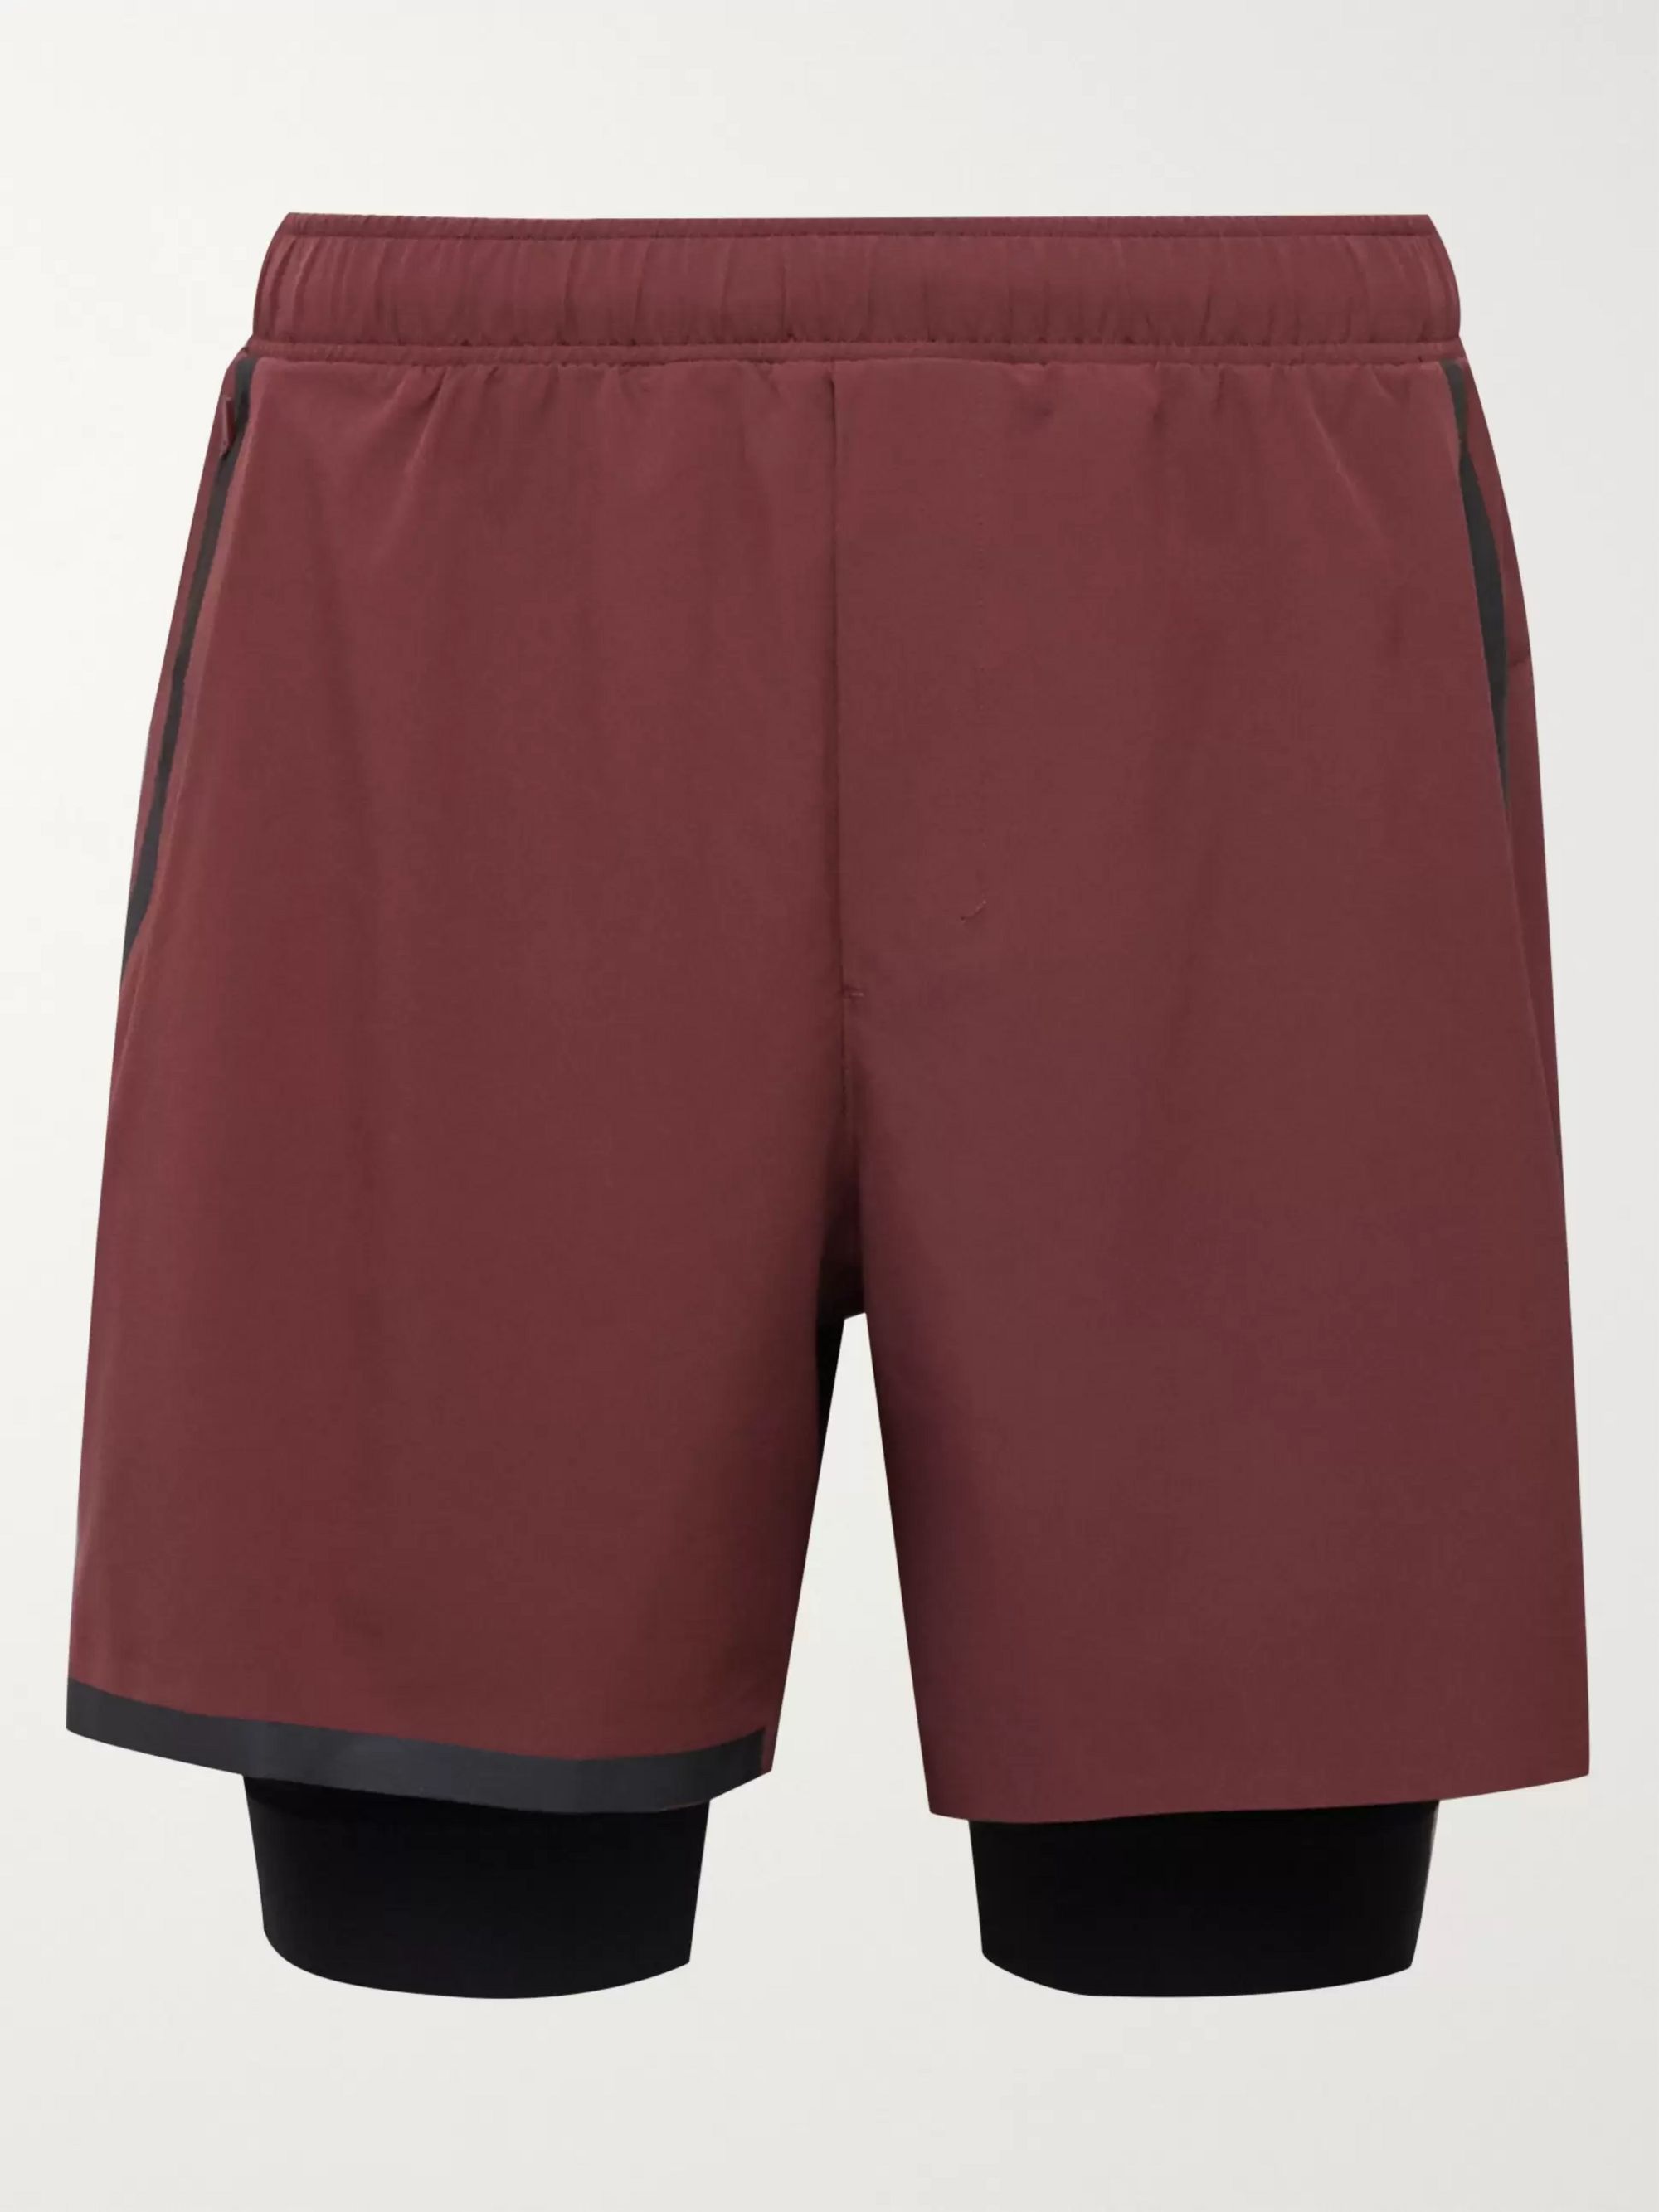 lululemon maroon shorts